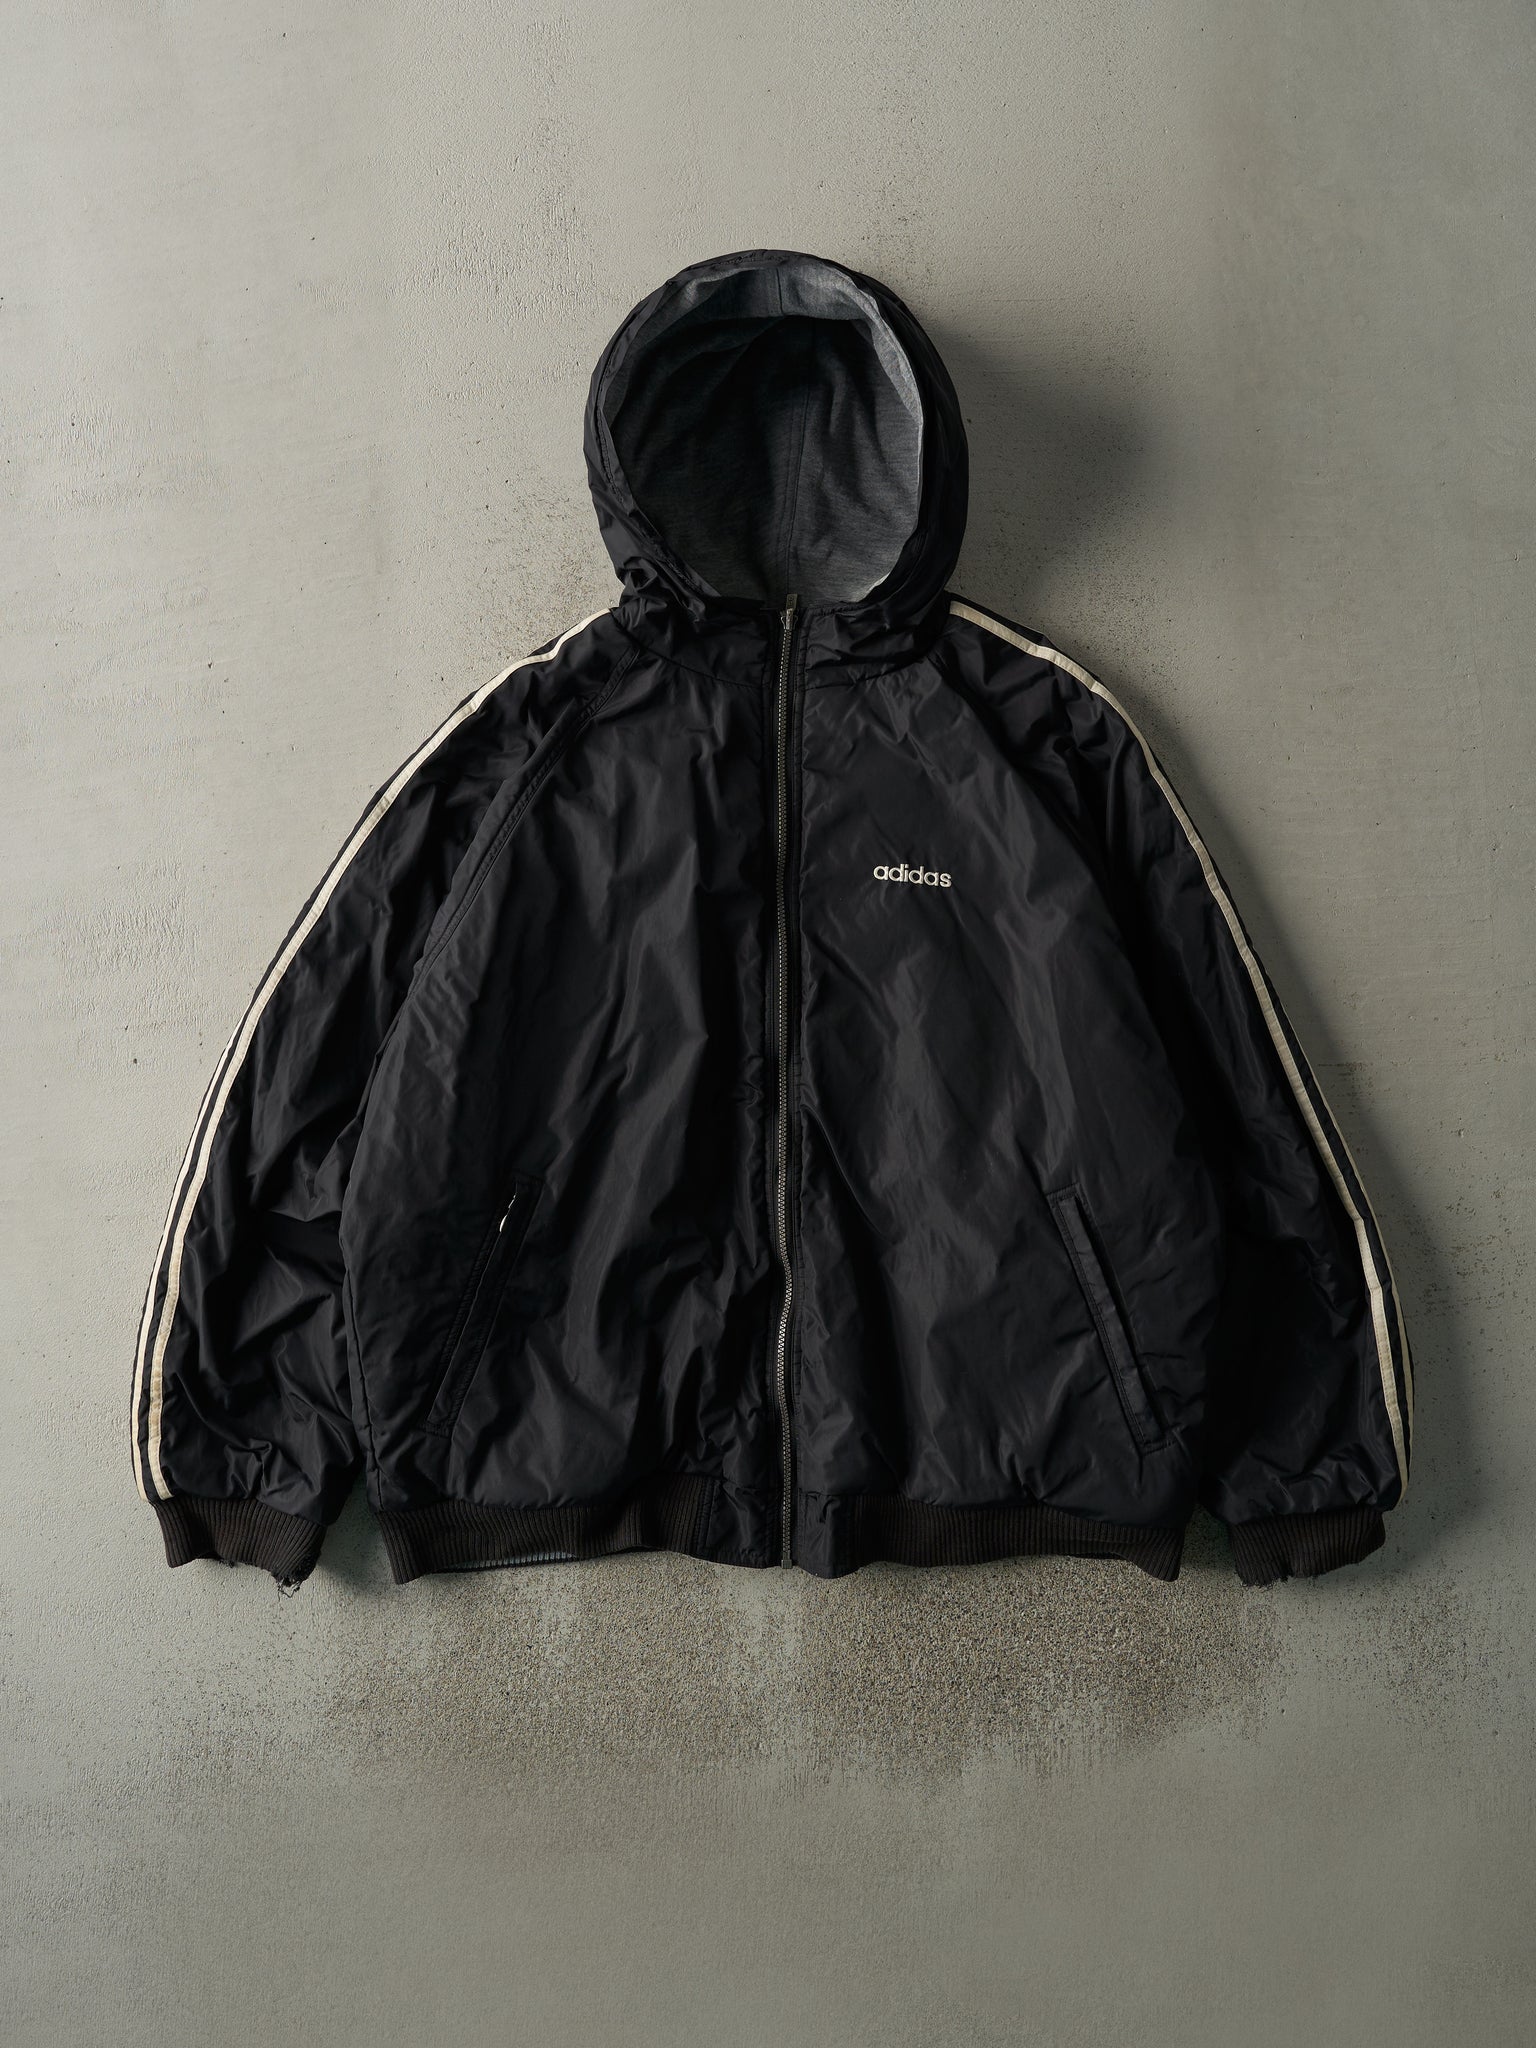 Vintage 90s Black Adidas Reversible Windbreaker Jacket (XL)